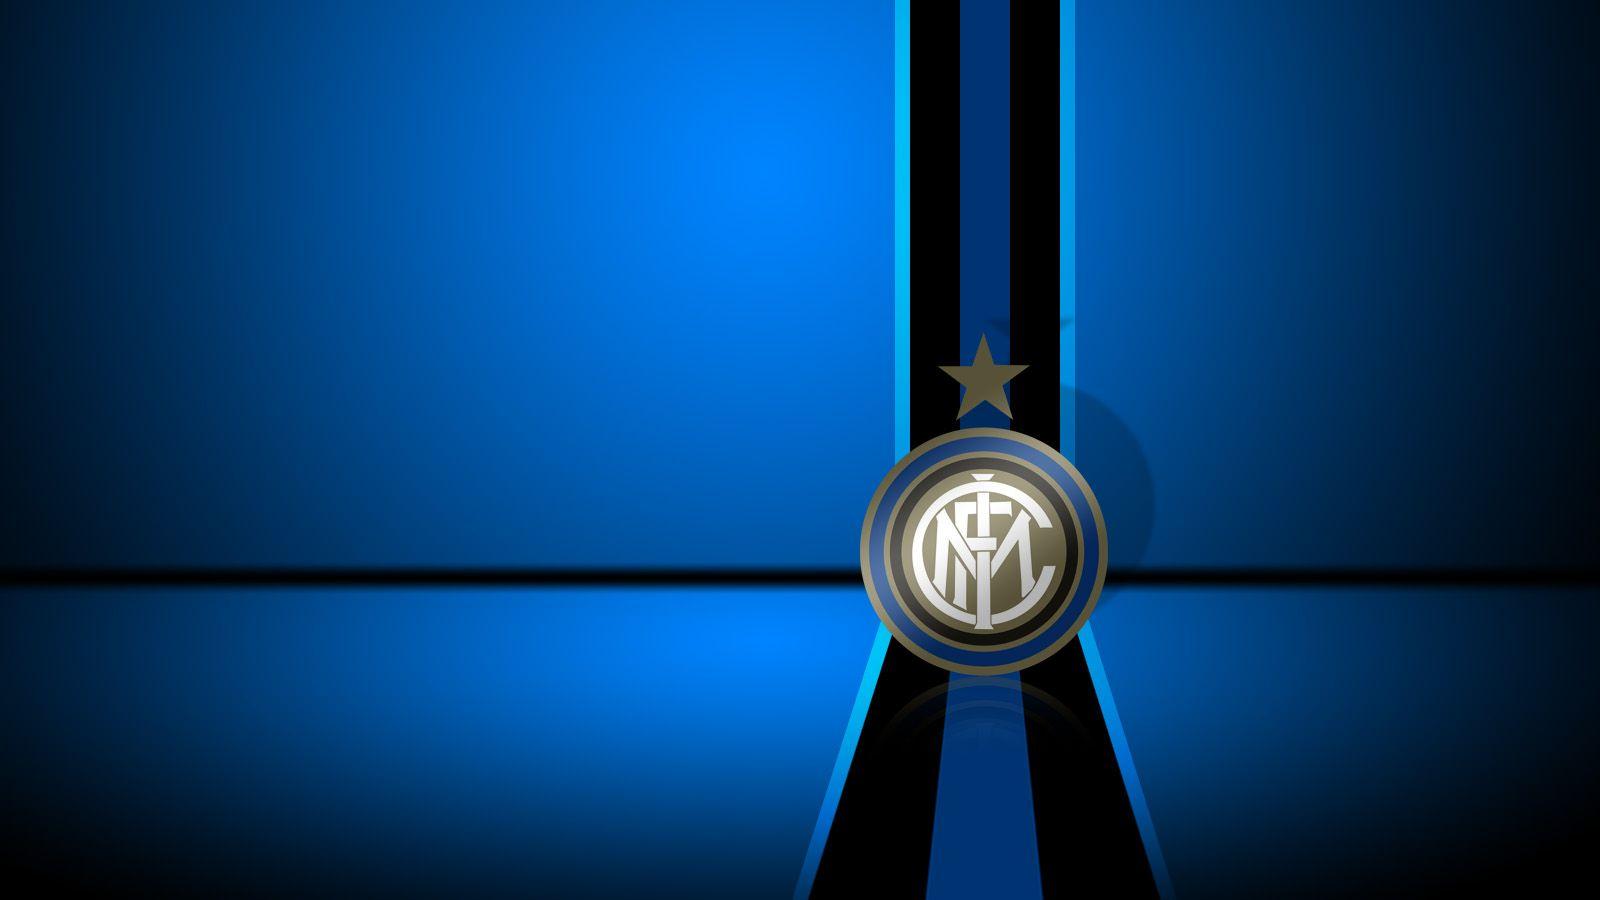 Blue Inter Milan Logo Football Club Wallpaper Wallpaper